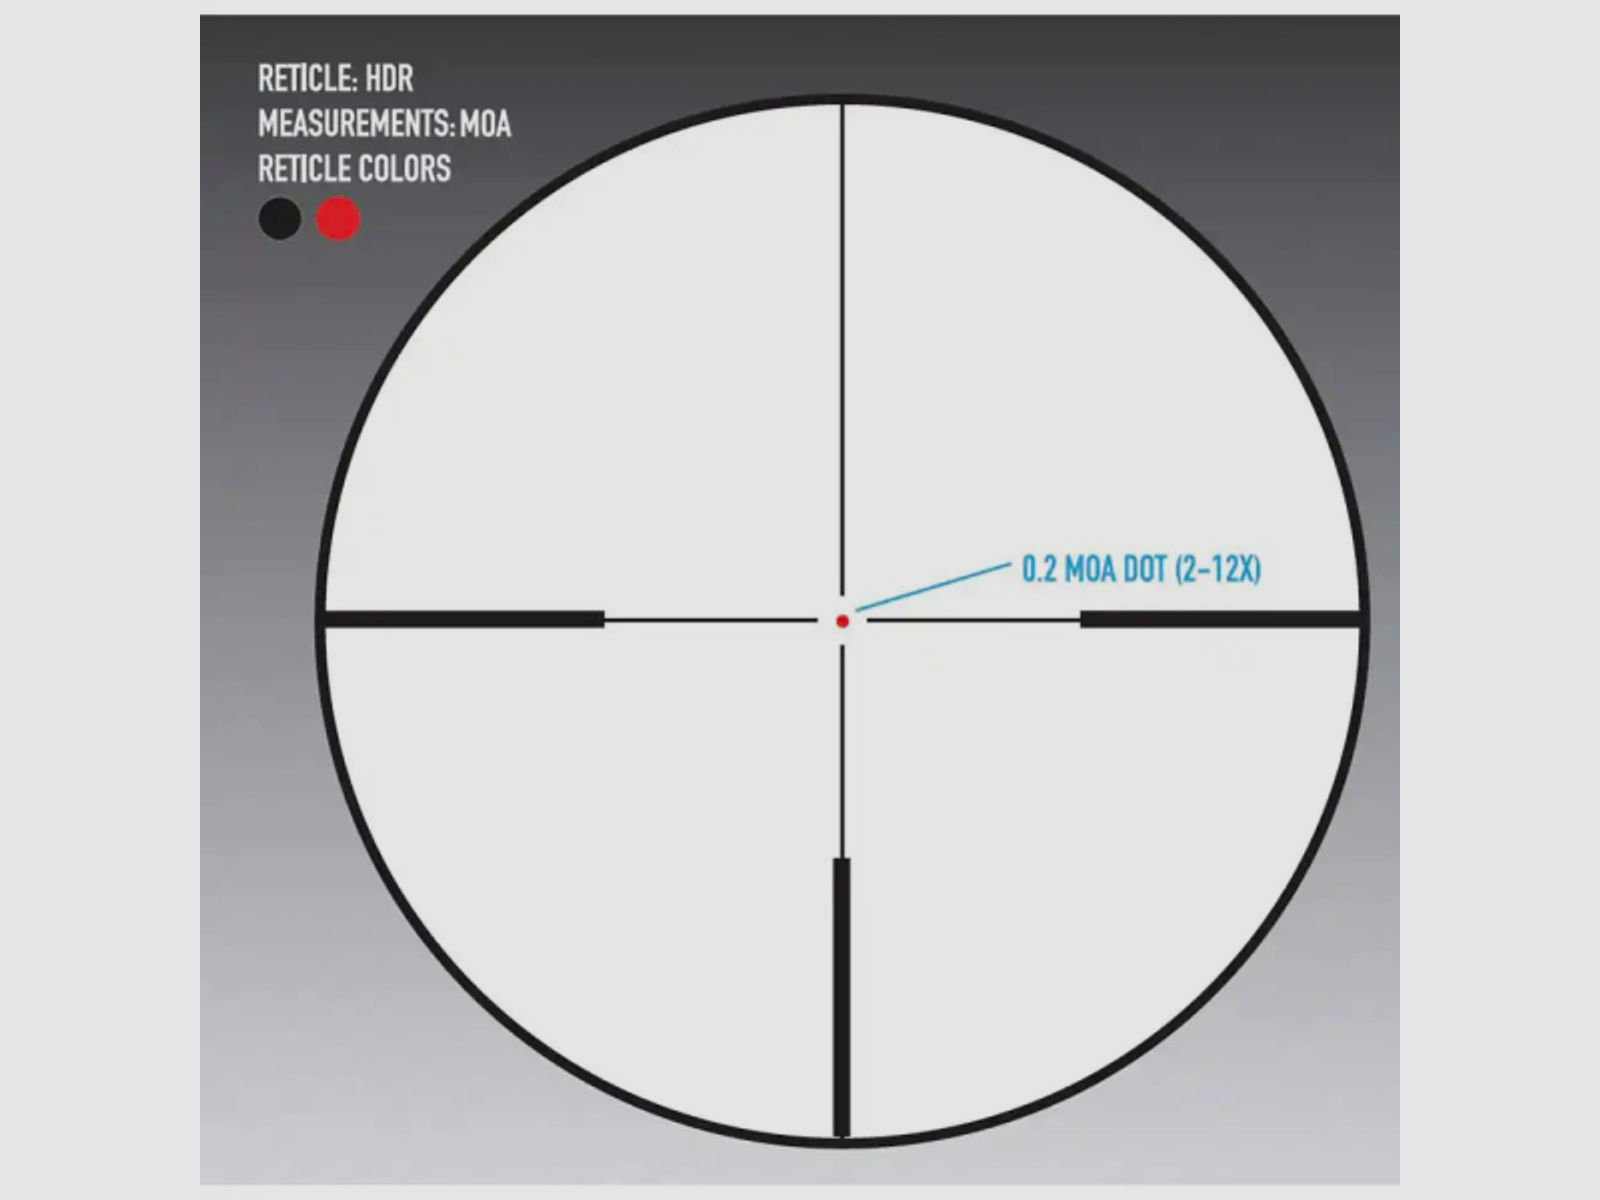 Sightmark Zielfernrohr Core HX 2.0 3-12x56 für Jäger und Sportschützen